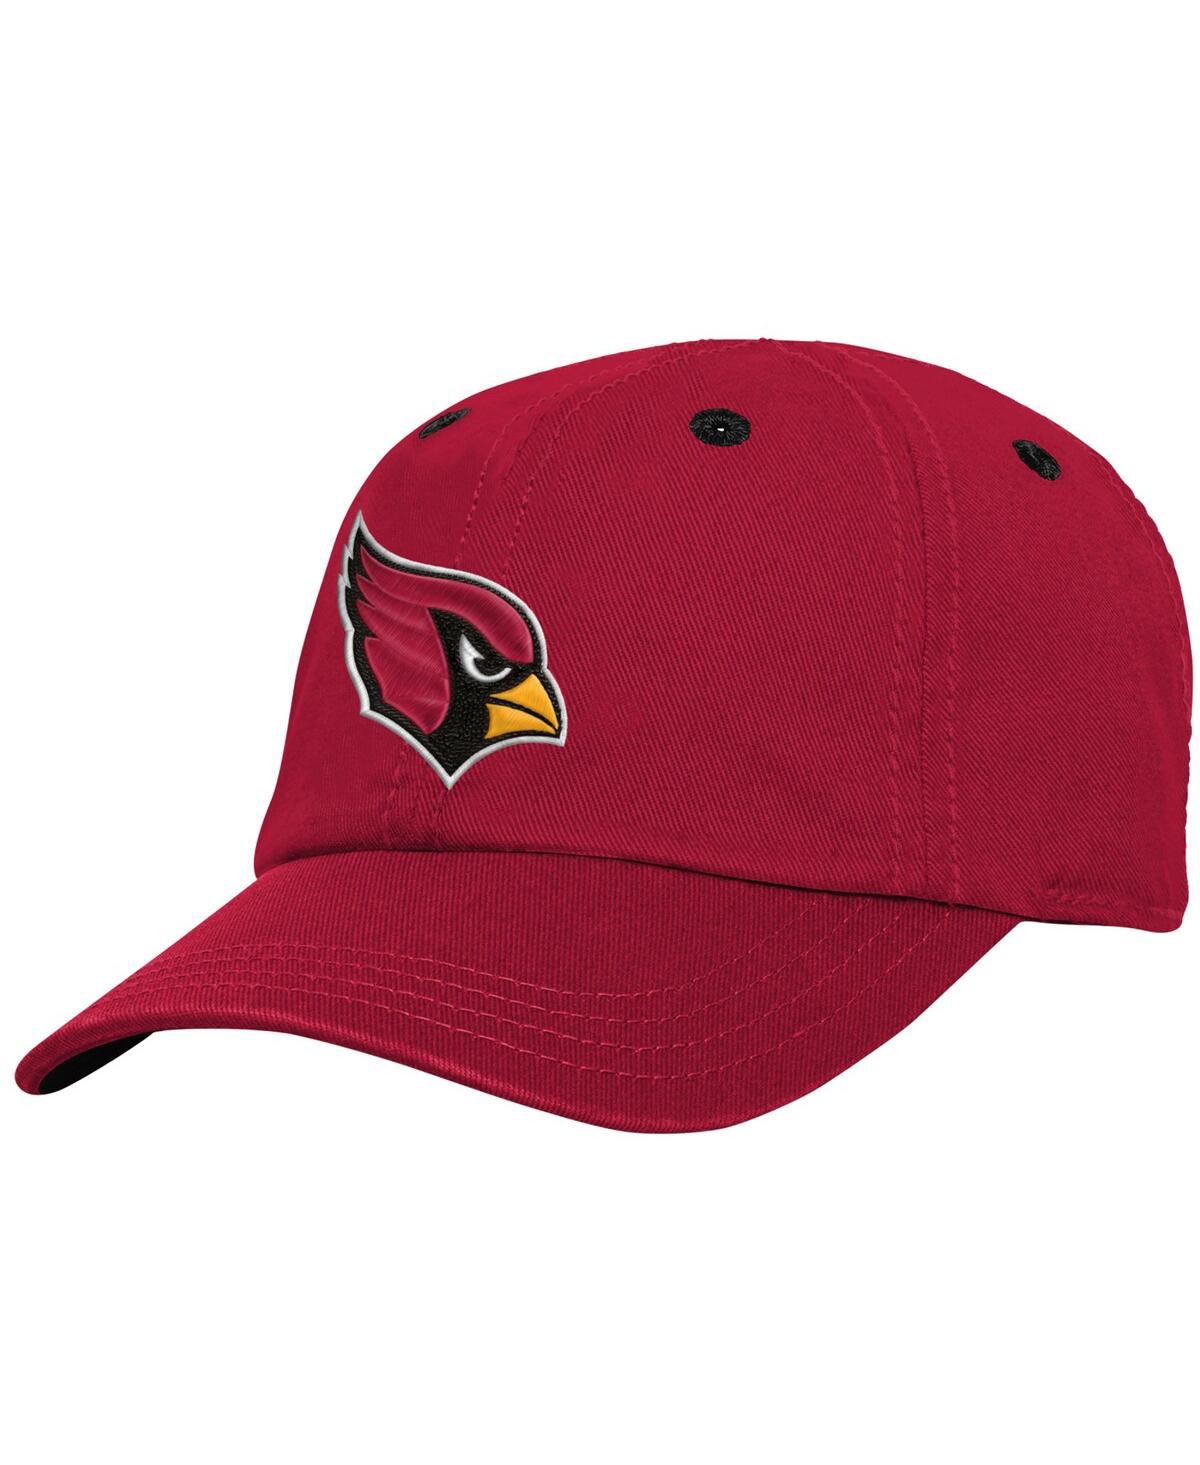 Shop Outerstuff Infant Boys Cardinal Arizona Cardinals Slouch Flex Hat